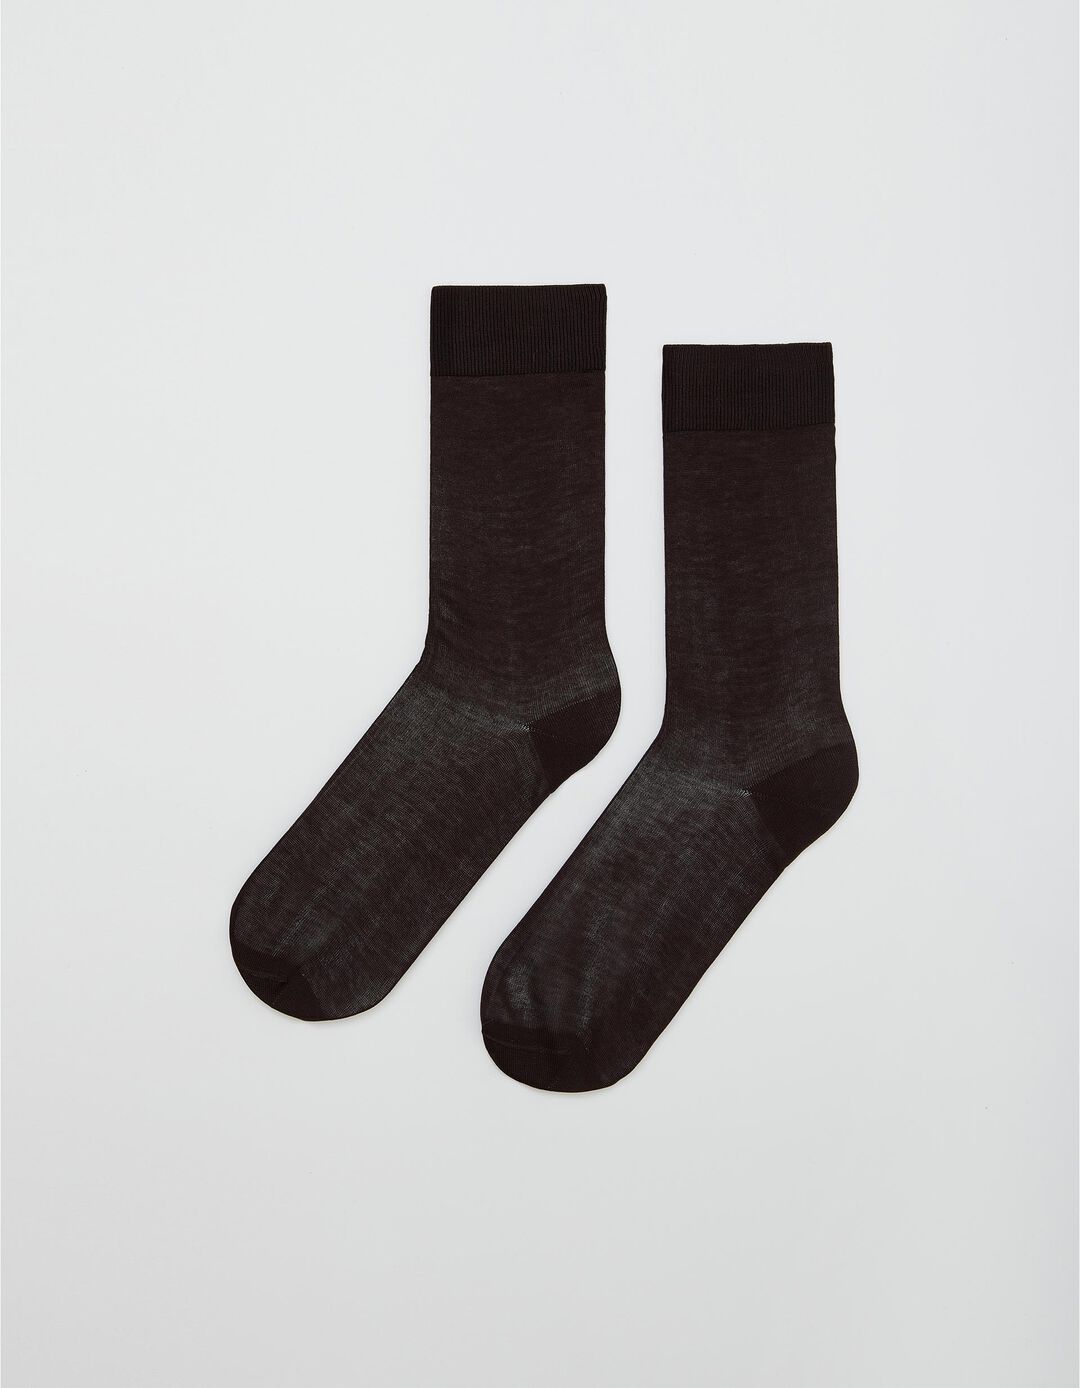 100% Cotton Socks for Men, Brown